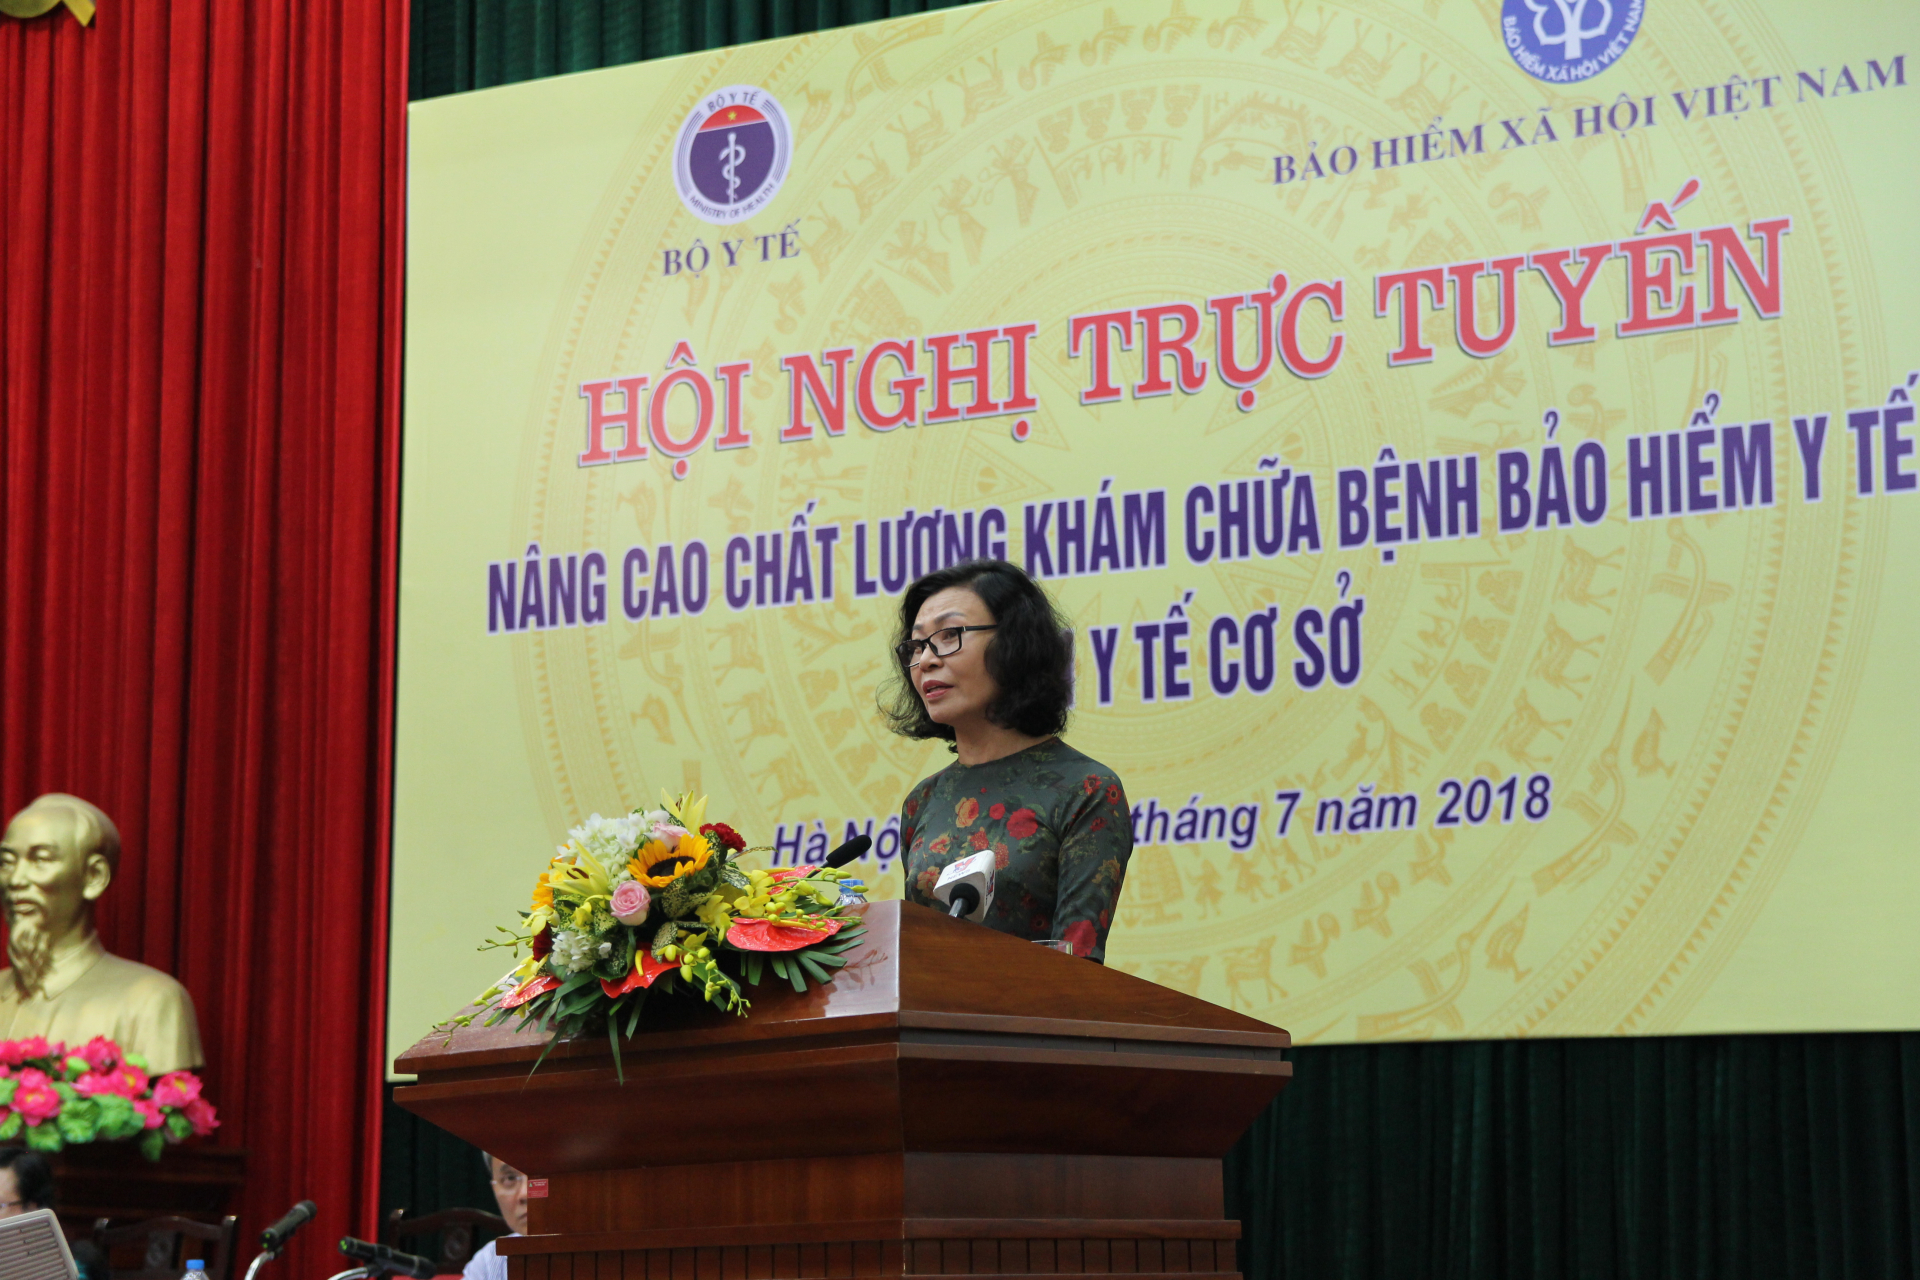 Bà Nguyễn Thị Minh - Tổng Giám đốc BHXH Việt Nam nhận định, không phải hầu hết nhưng phần lớn người dân chưa có niềm tin với y tế cơ sở ban đầu do các nguyên nhân thiếu nhân lực, vật lực.   